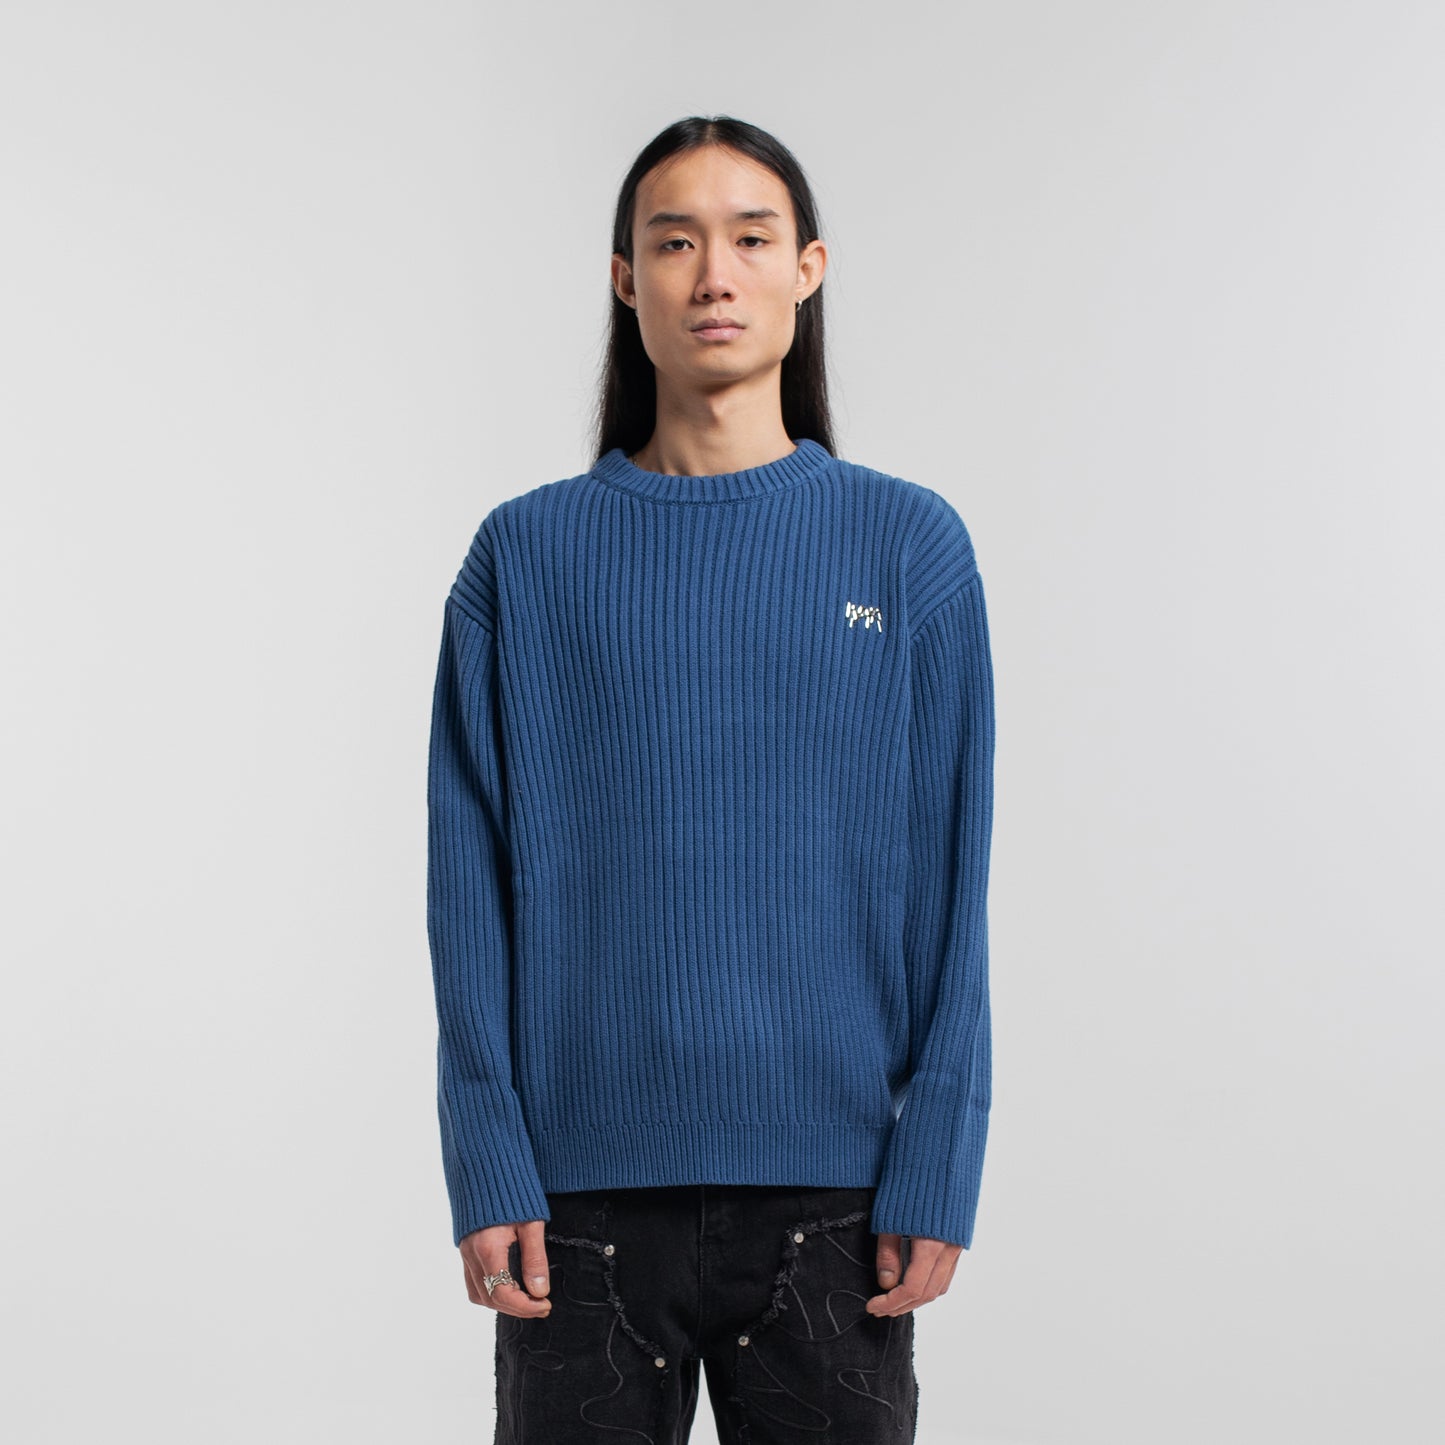 Wavy Sweater - Blue